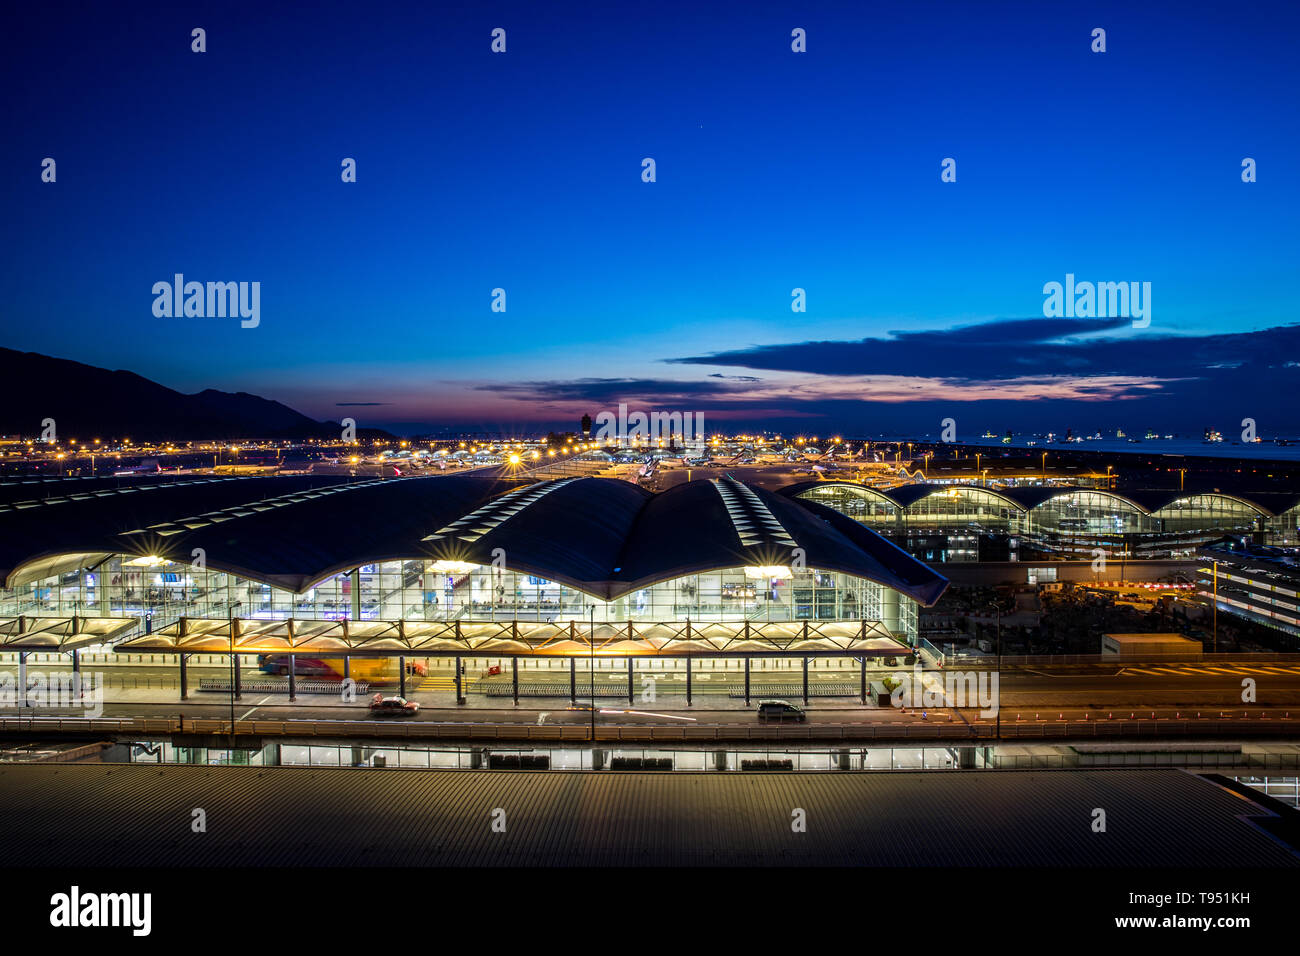 Hong Kong international airport at twilight Stock Photo